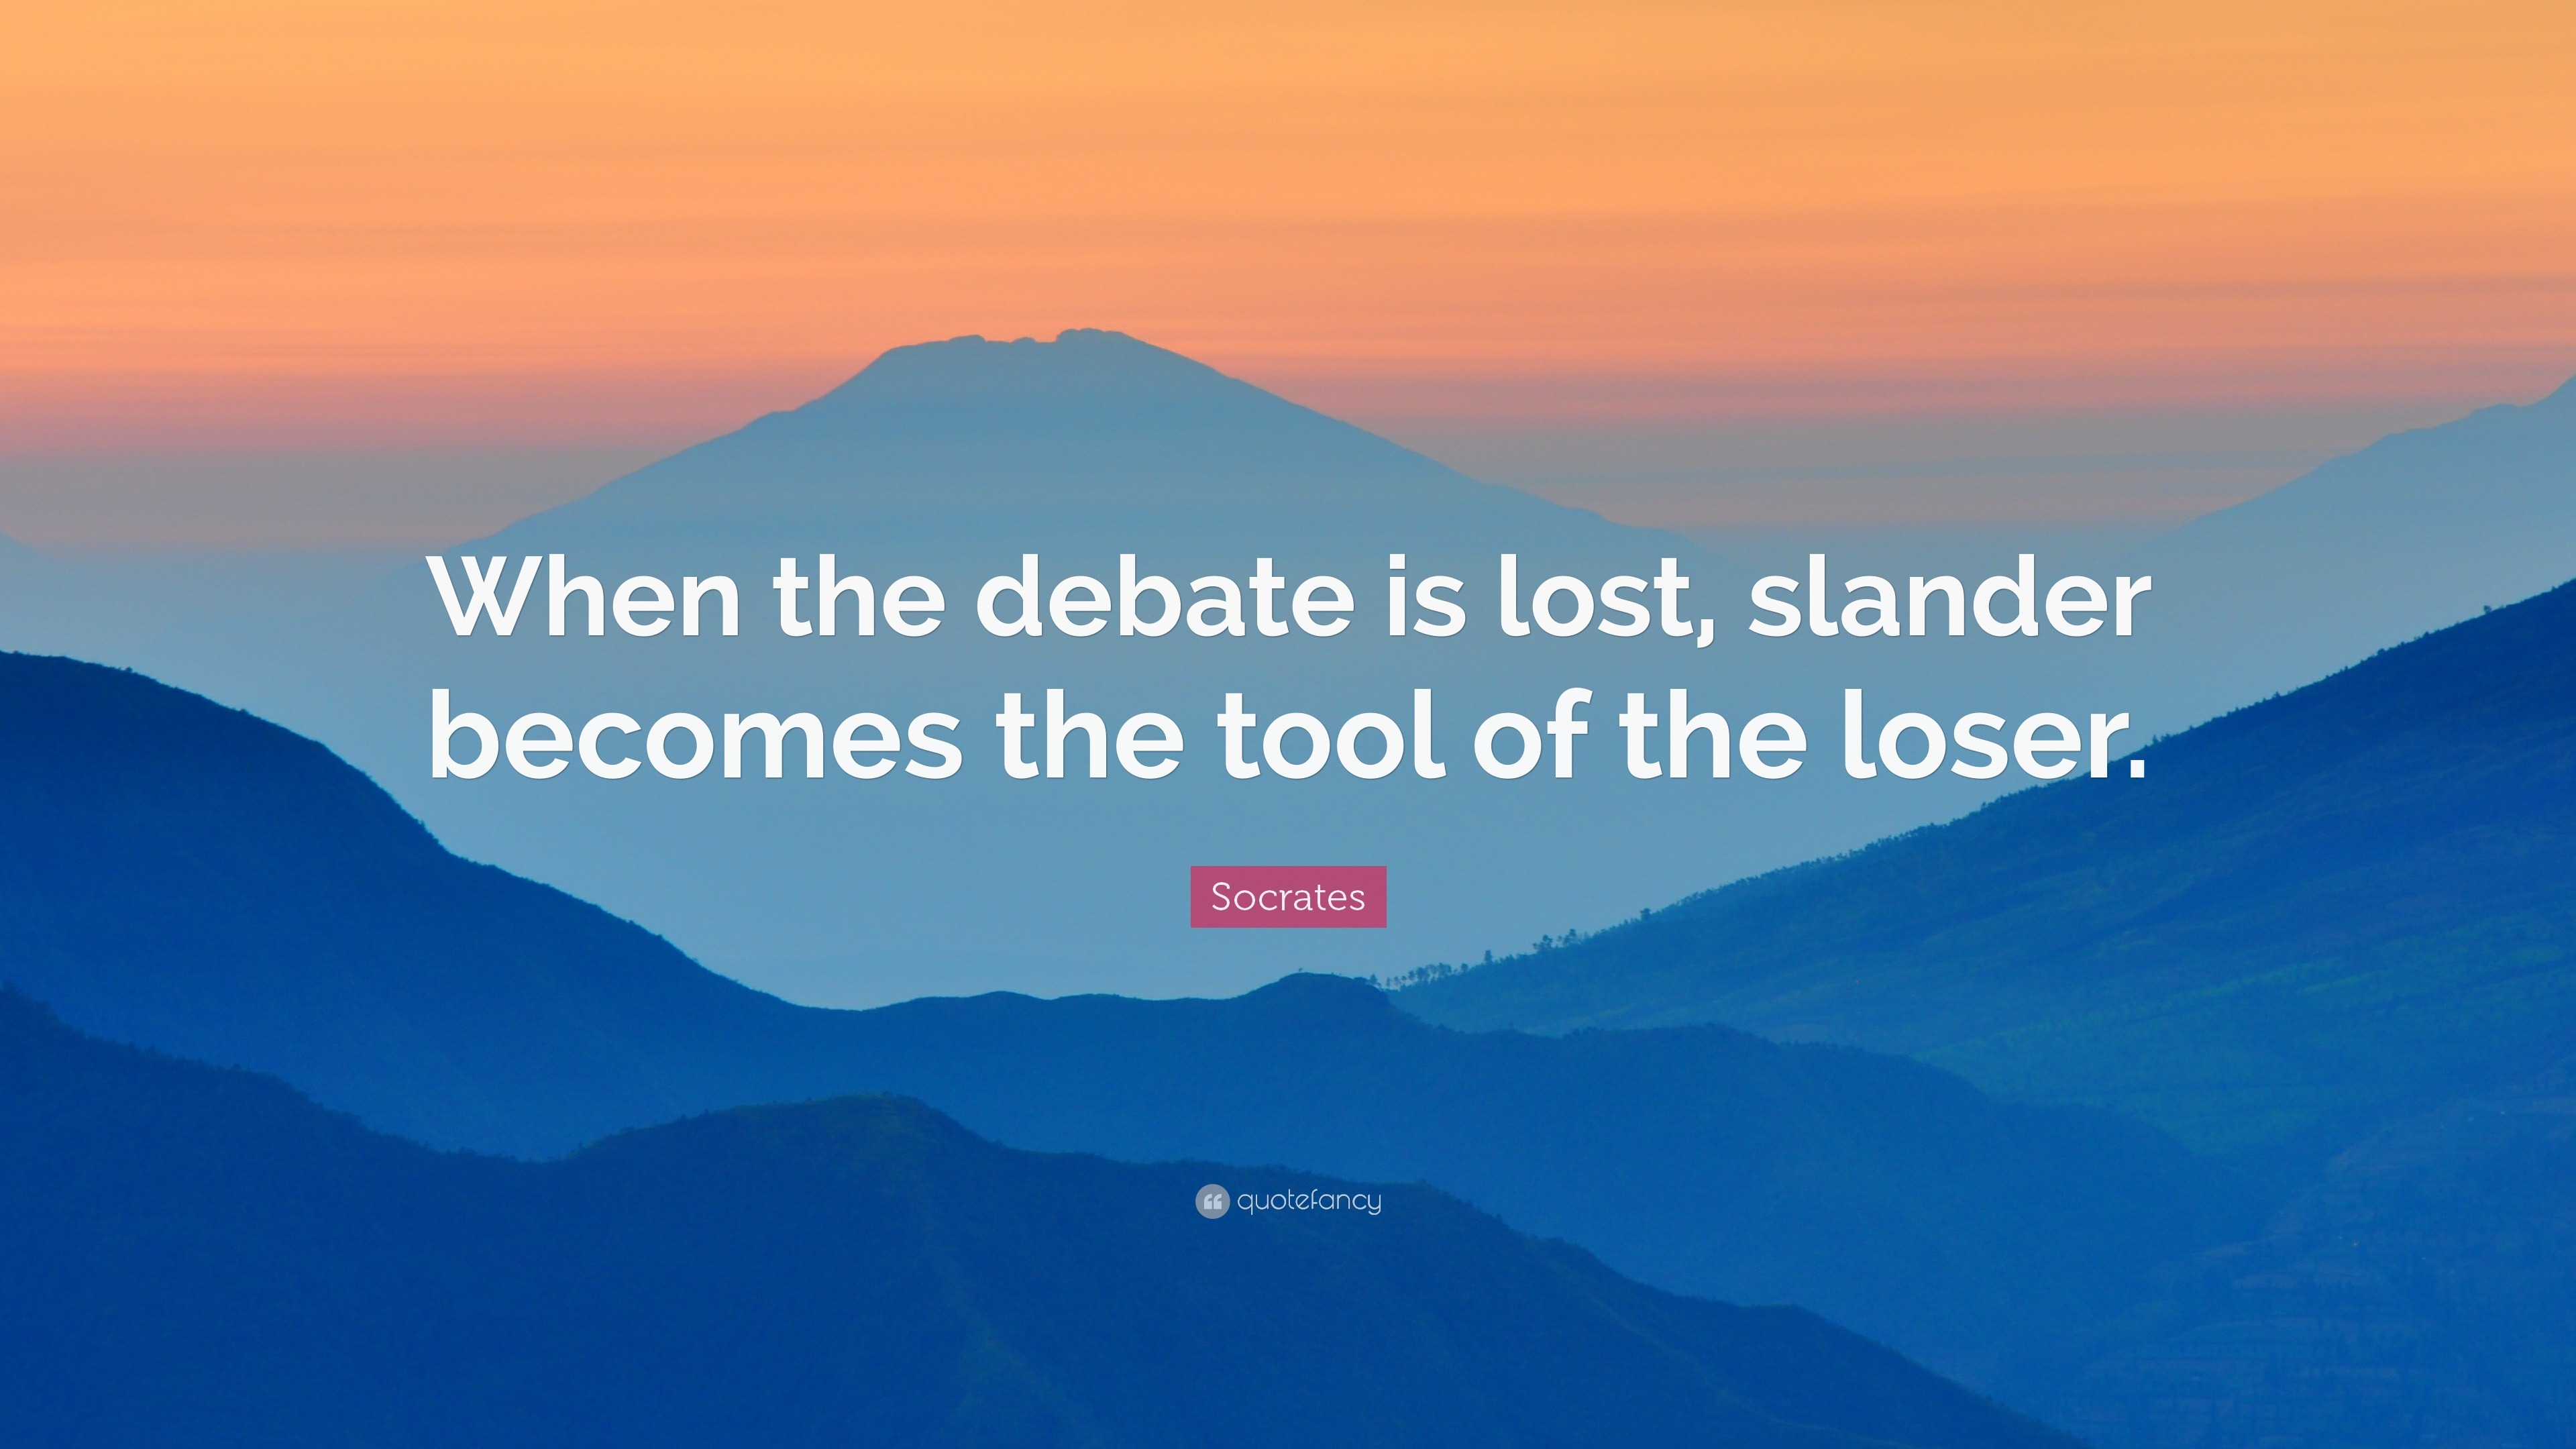 Socrates Quote “When the debate is lost, slander